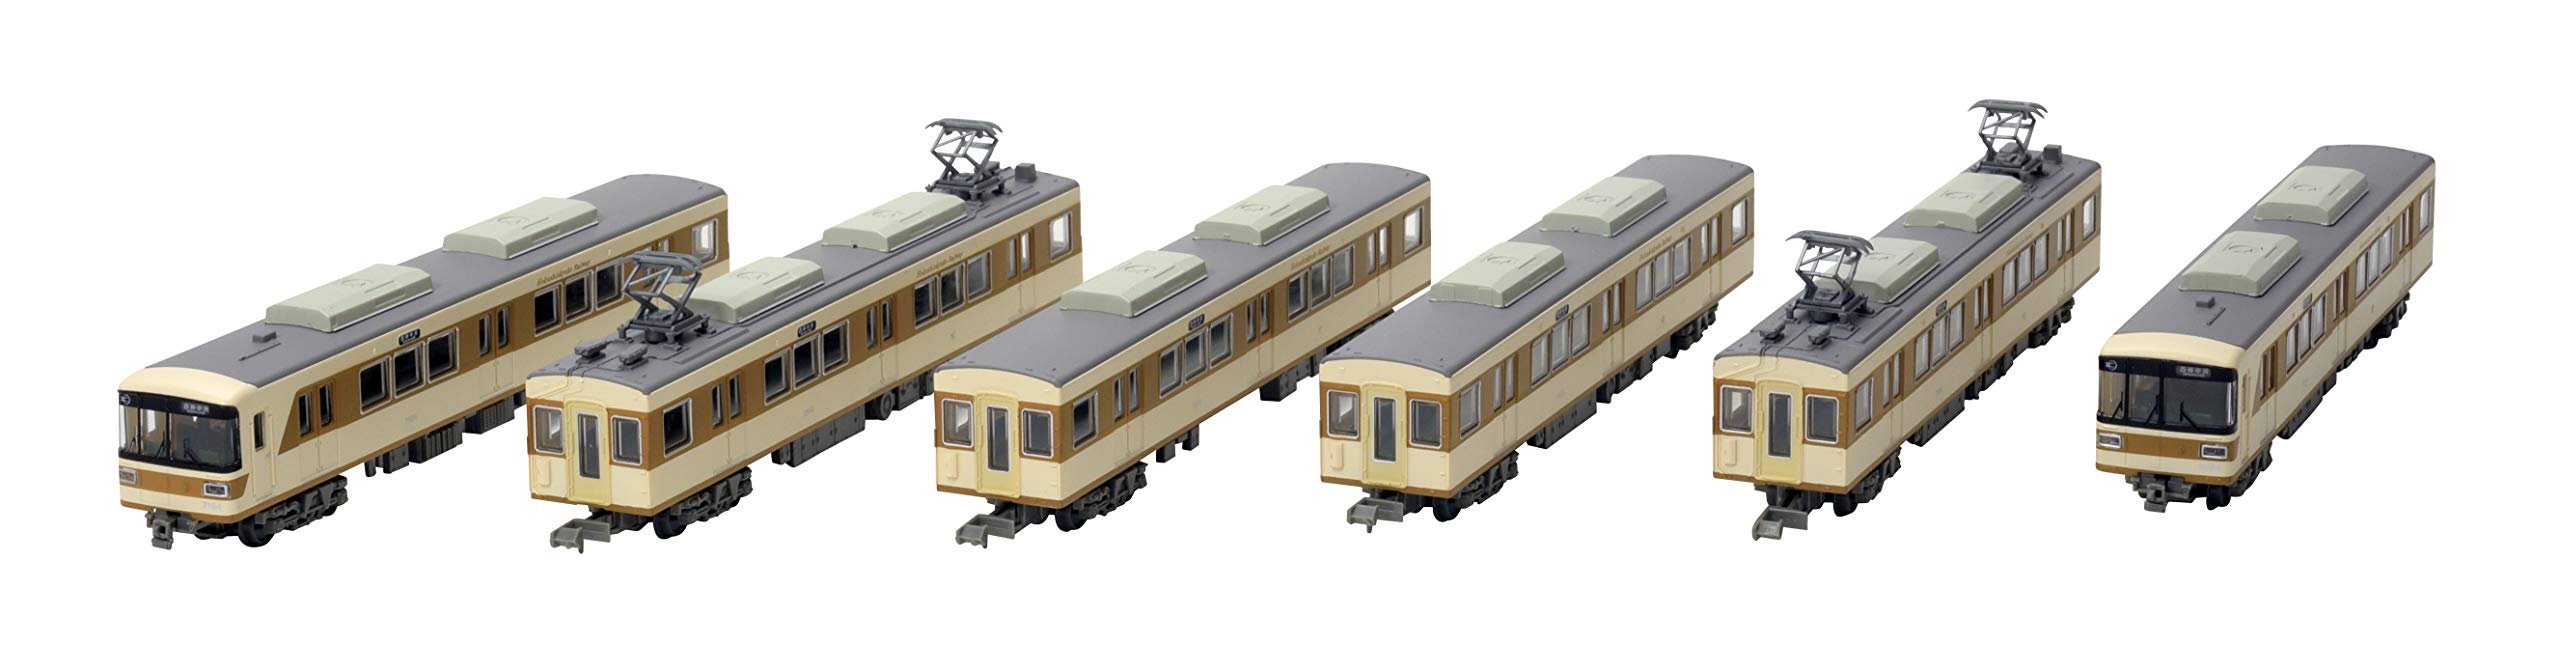 Tomytec Hokushin Kyuko Electric Railway Série 7000 Coffret de 6 voitures Édition limitée